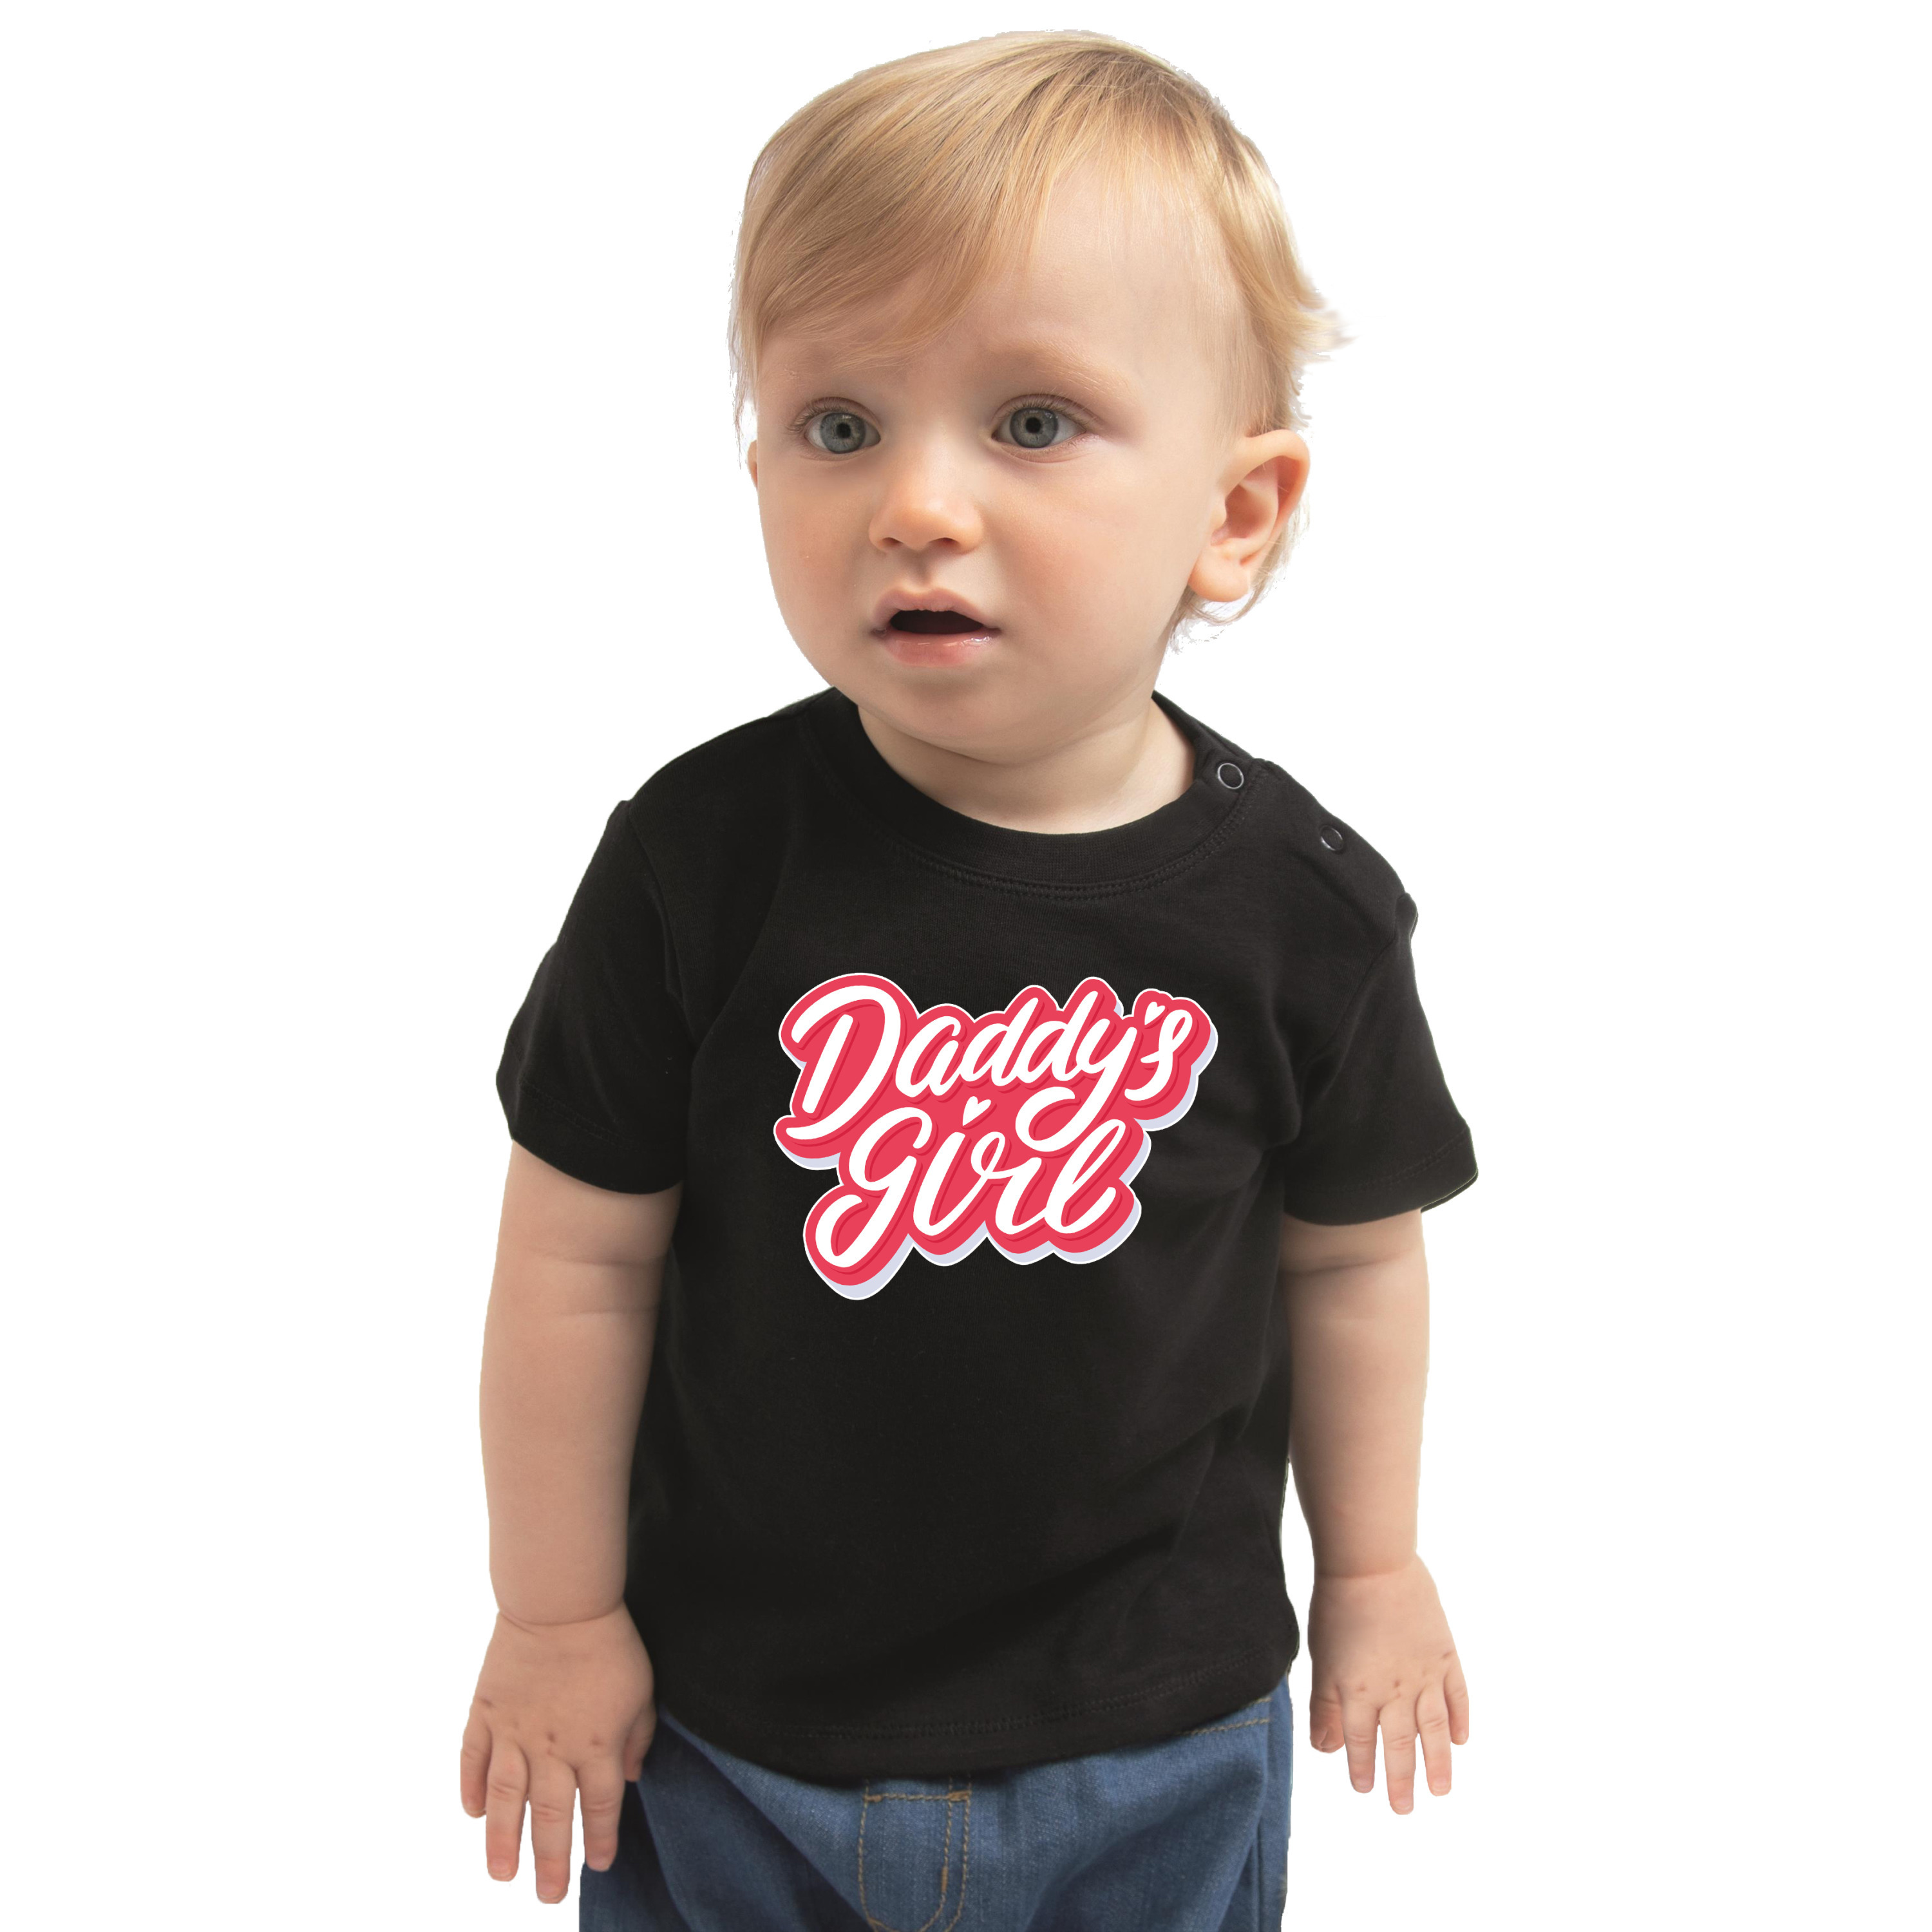 Cadeau voor aanstaande vader shirt-kleding Daddys girl zwart voor babys